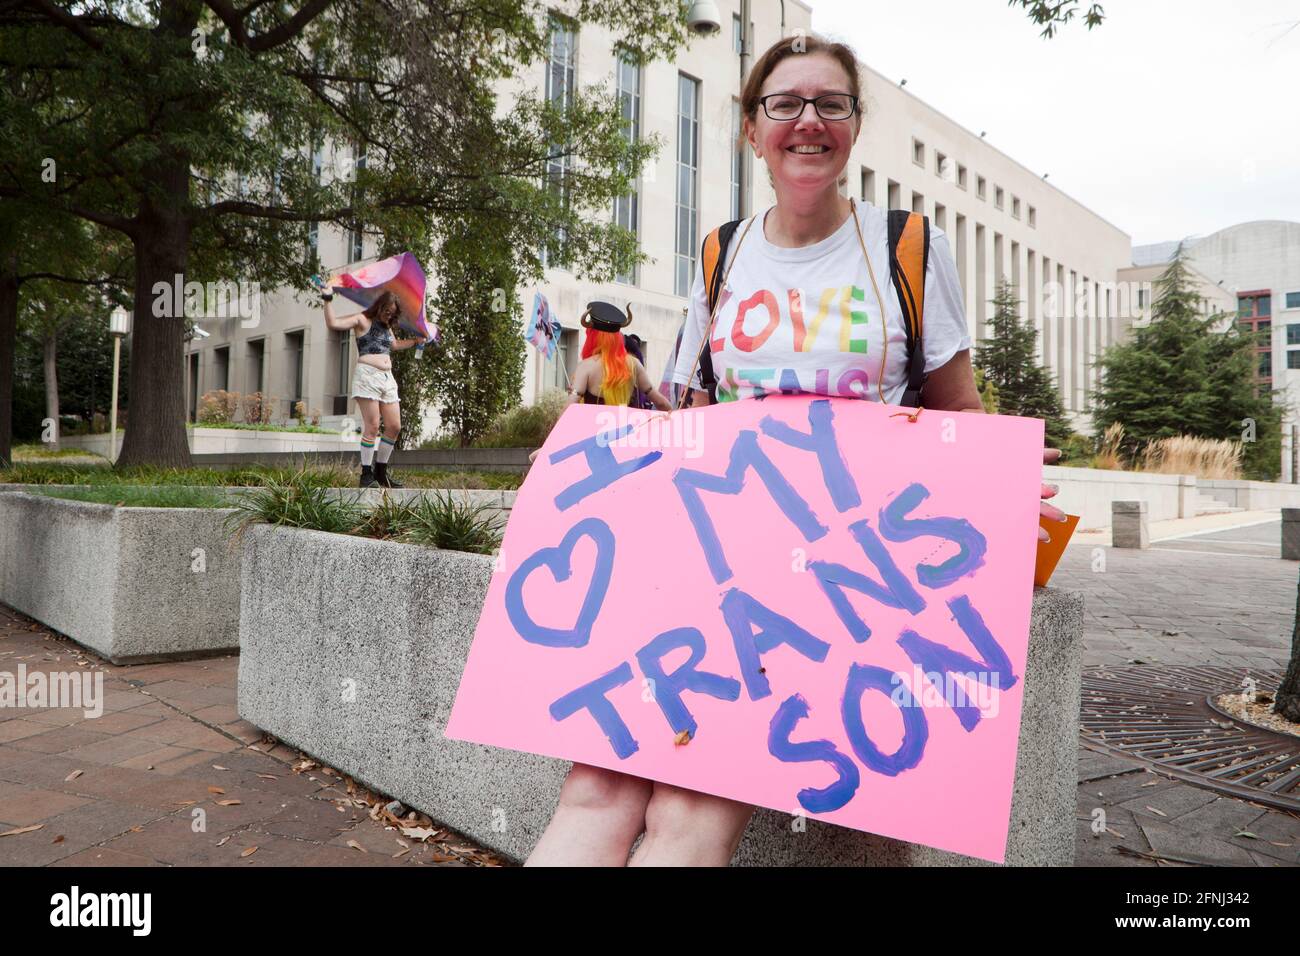 28 de septiembre de 2019 - Washington, DC EE.UU.: Los activistas de derechos transgénero y la familia se reúnen para crear conciencia durante la Marcha Nacional de Visibilidad Trans Foto de stock